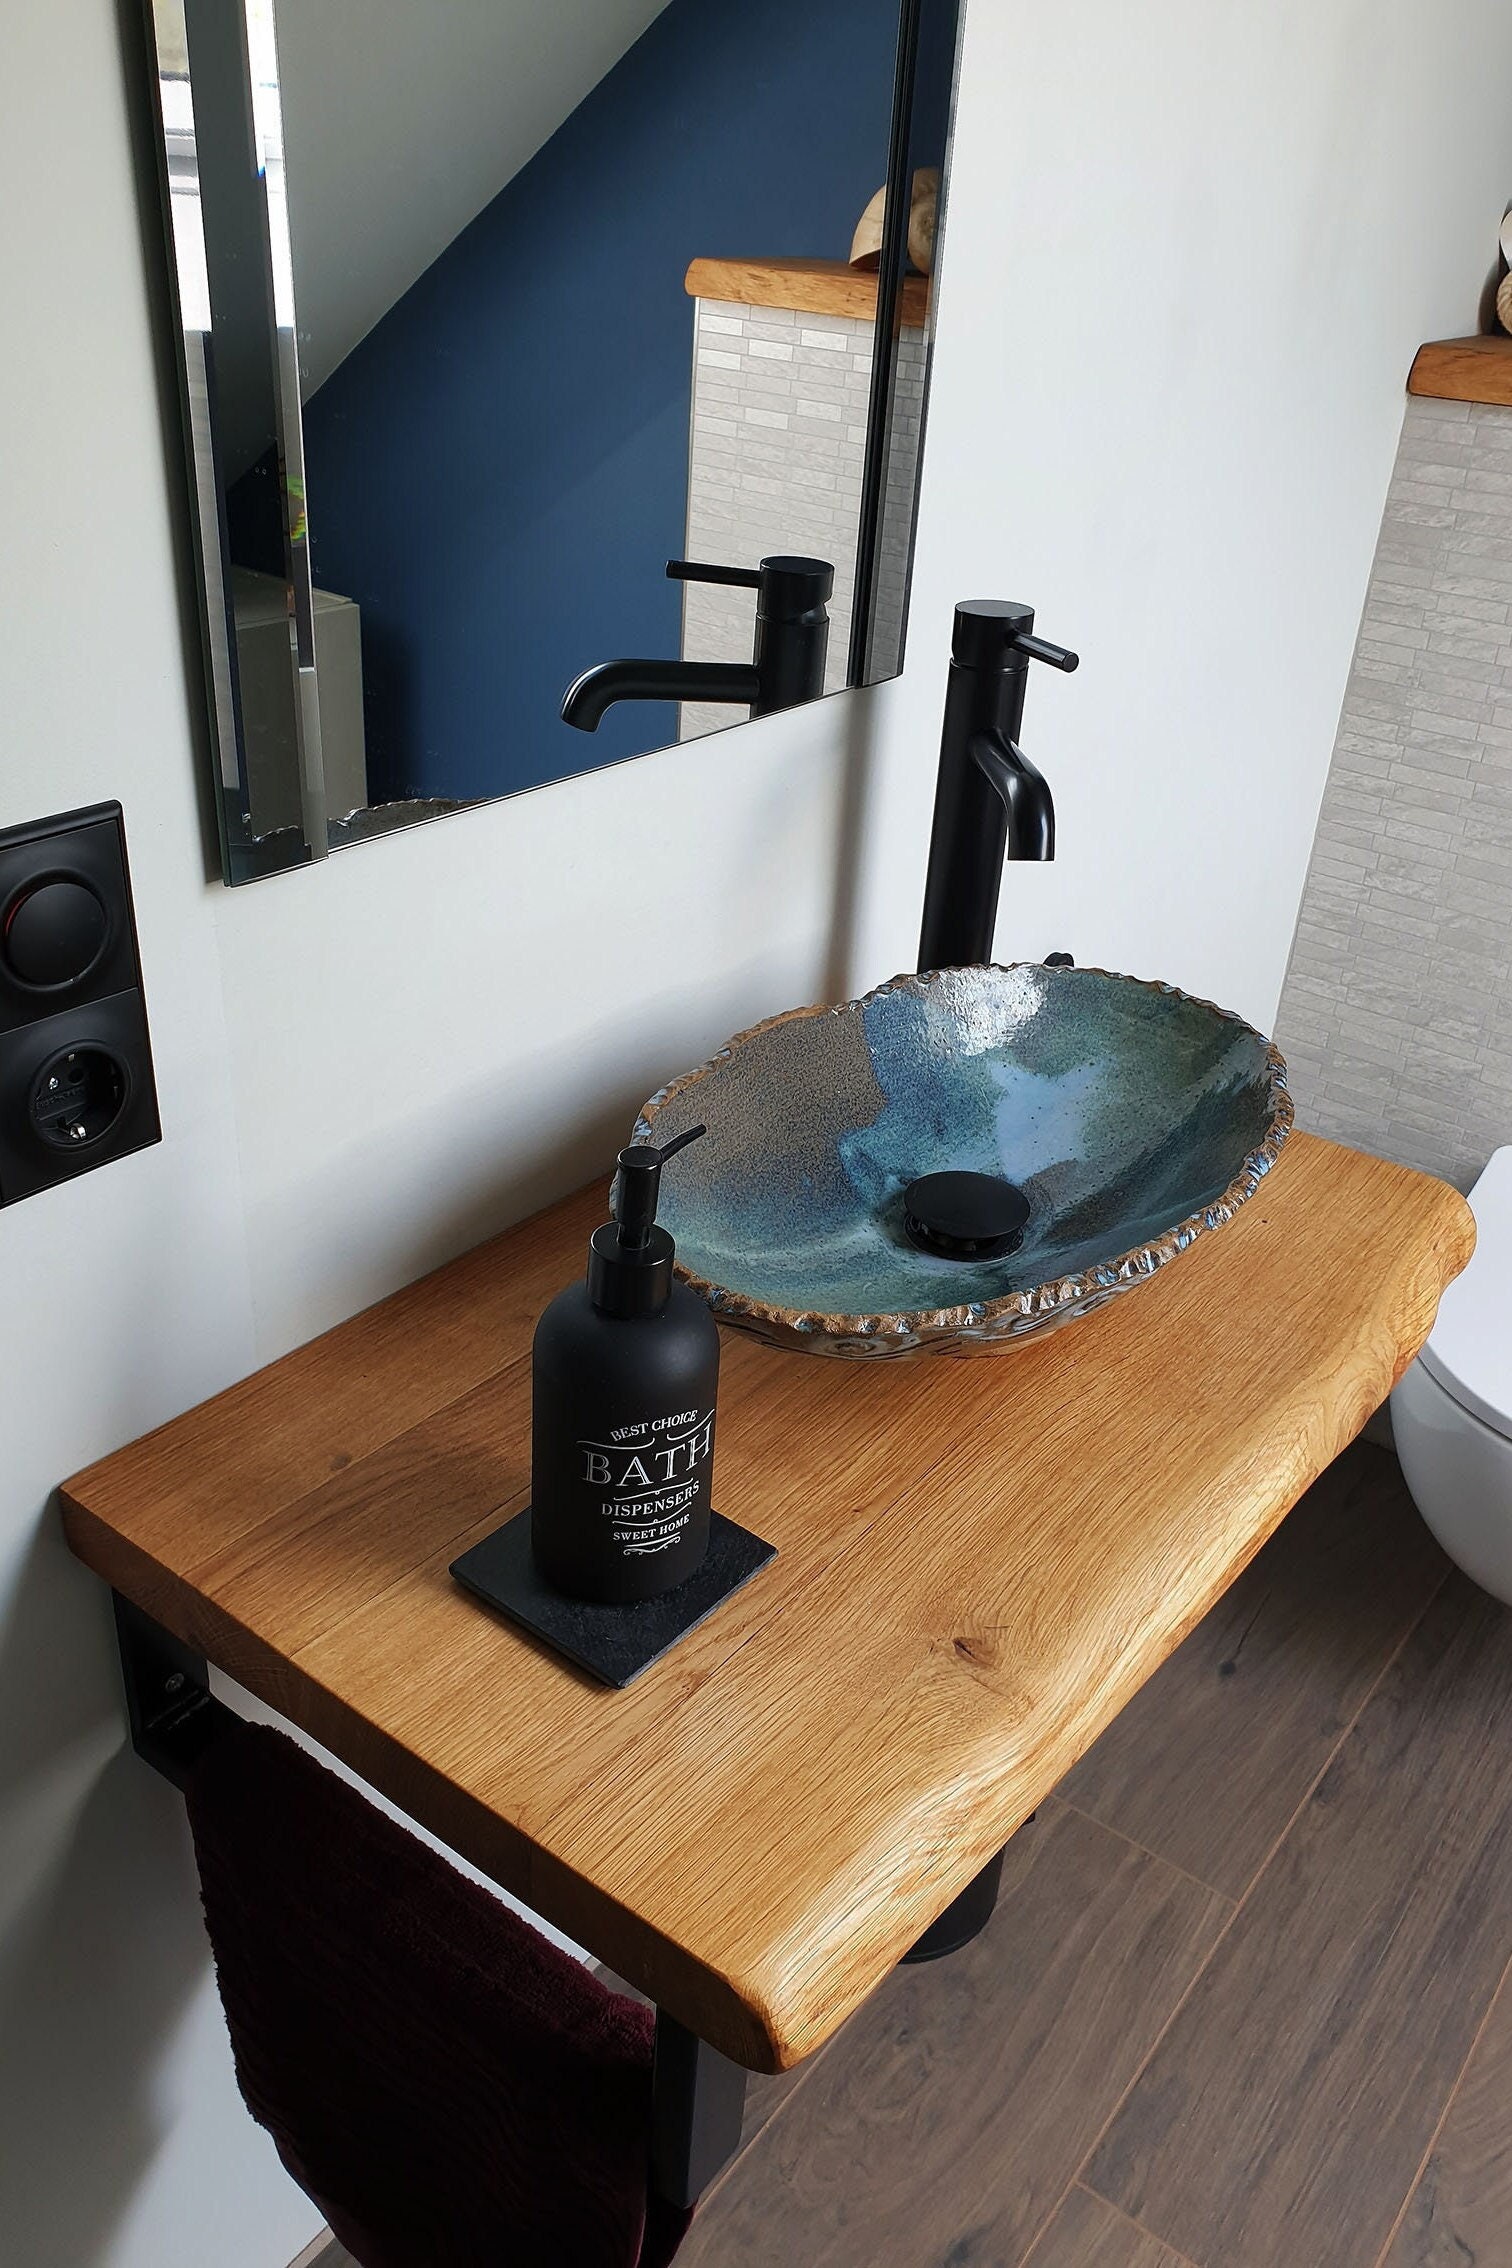 Piano lavabo Pannello in legno massello Vanity rovere oliato